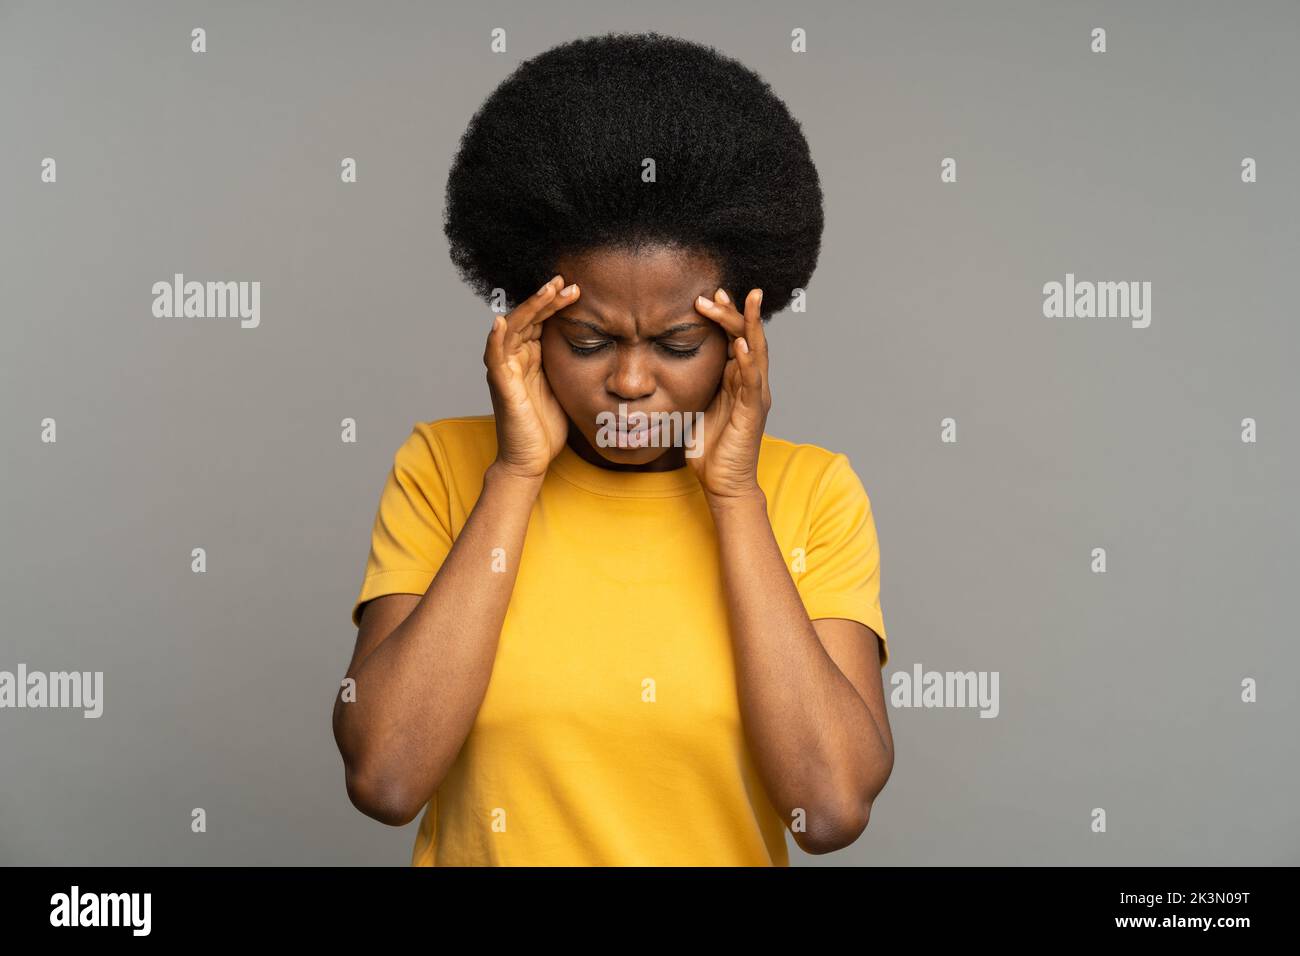 Mujer negra disgustada con cabello rizado sufre de tensión nerviosa y estrés, tocando su frente. Foto de stock